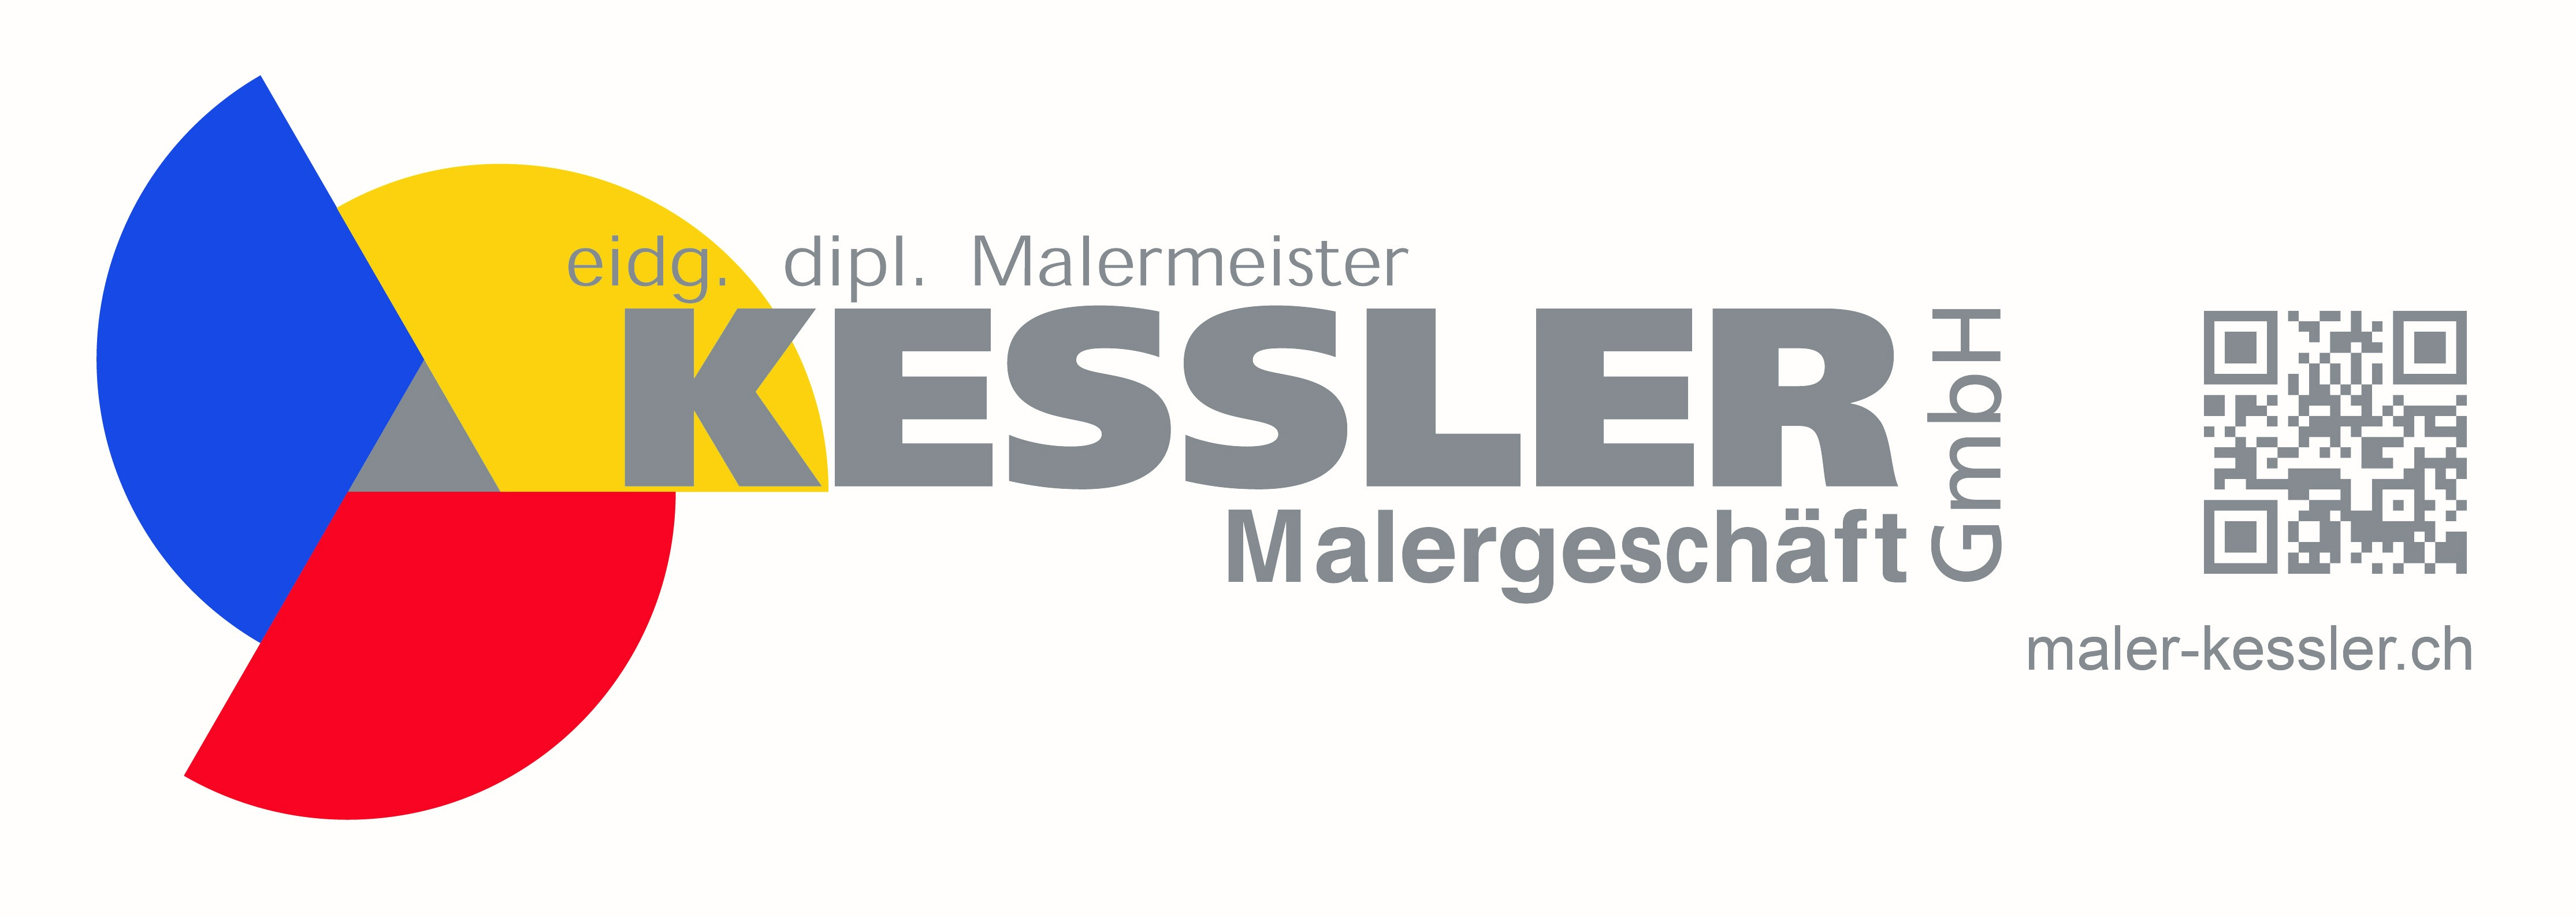 Malergeschäft Kessler GmbH